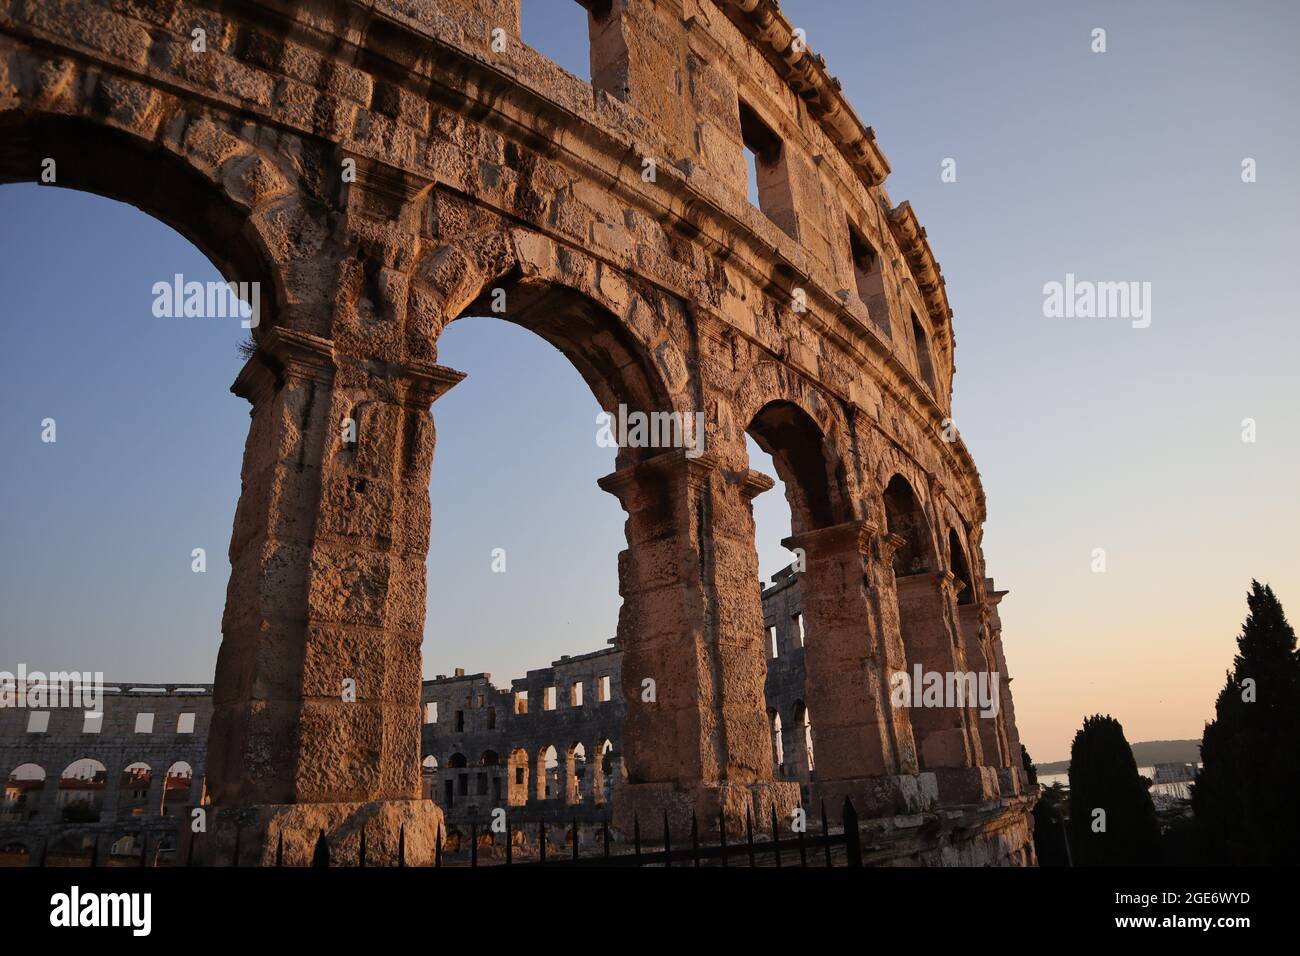 Arène romaine du premier siècle à Pula. Deuxième plus grande arène d'Europe. Photo prise le soir avec une lumière exceptionnelle. Banque D'Images